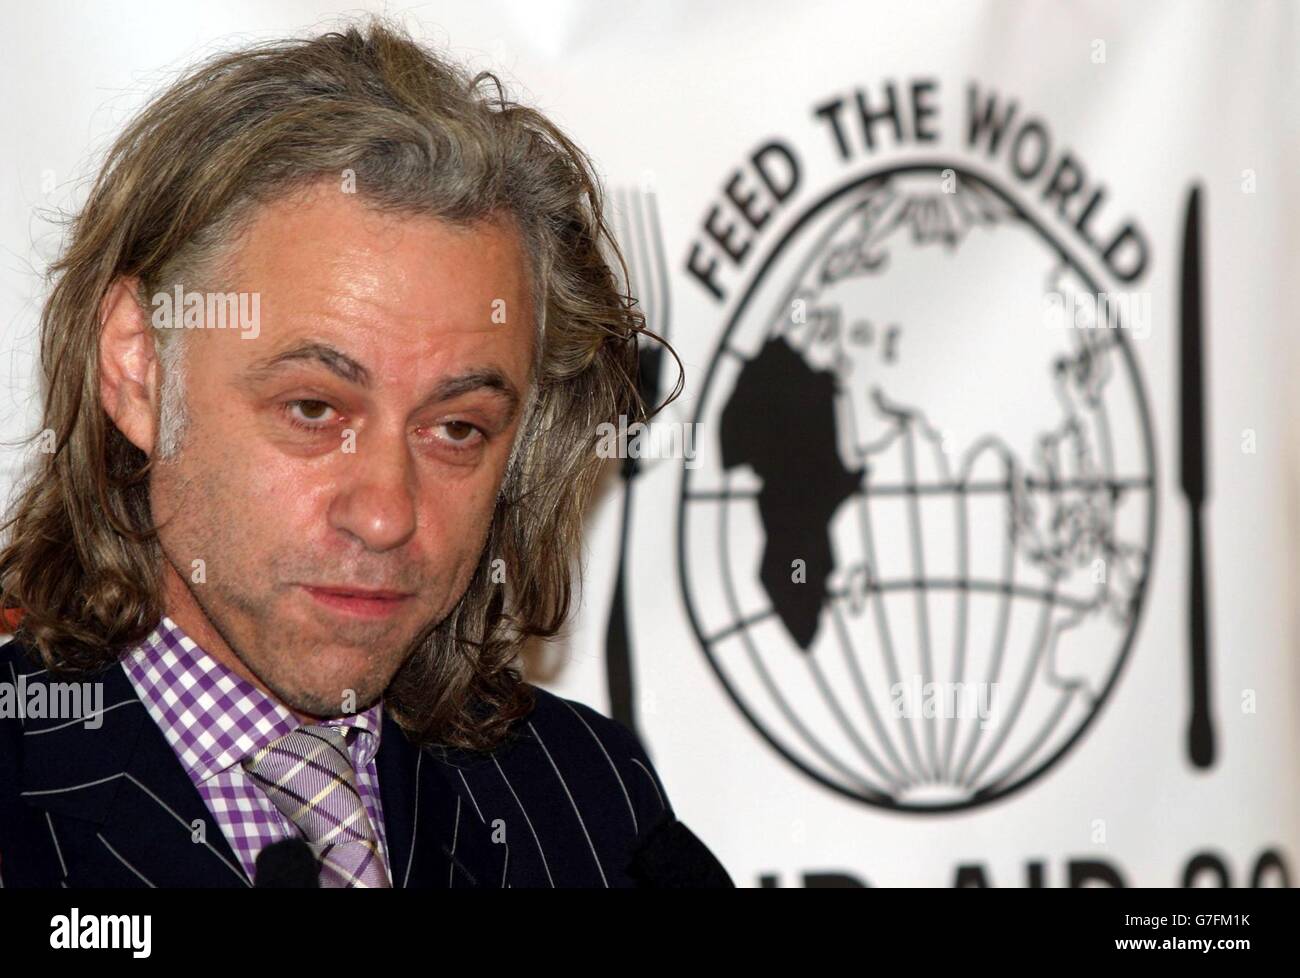 Bob Geldof in New York City, um die Live Aid DVD zu promoten. Sein Auftritt folgte der Ausstrahlung der neuen Band Aid 20 Charity Single in Großbritannien, um Geld für Afrika zu sammeln. Stockfoto